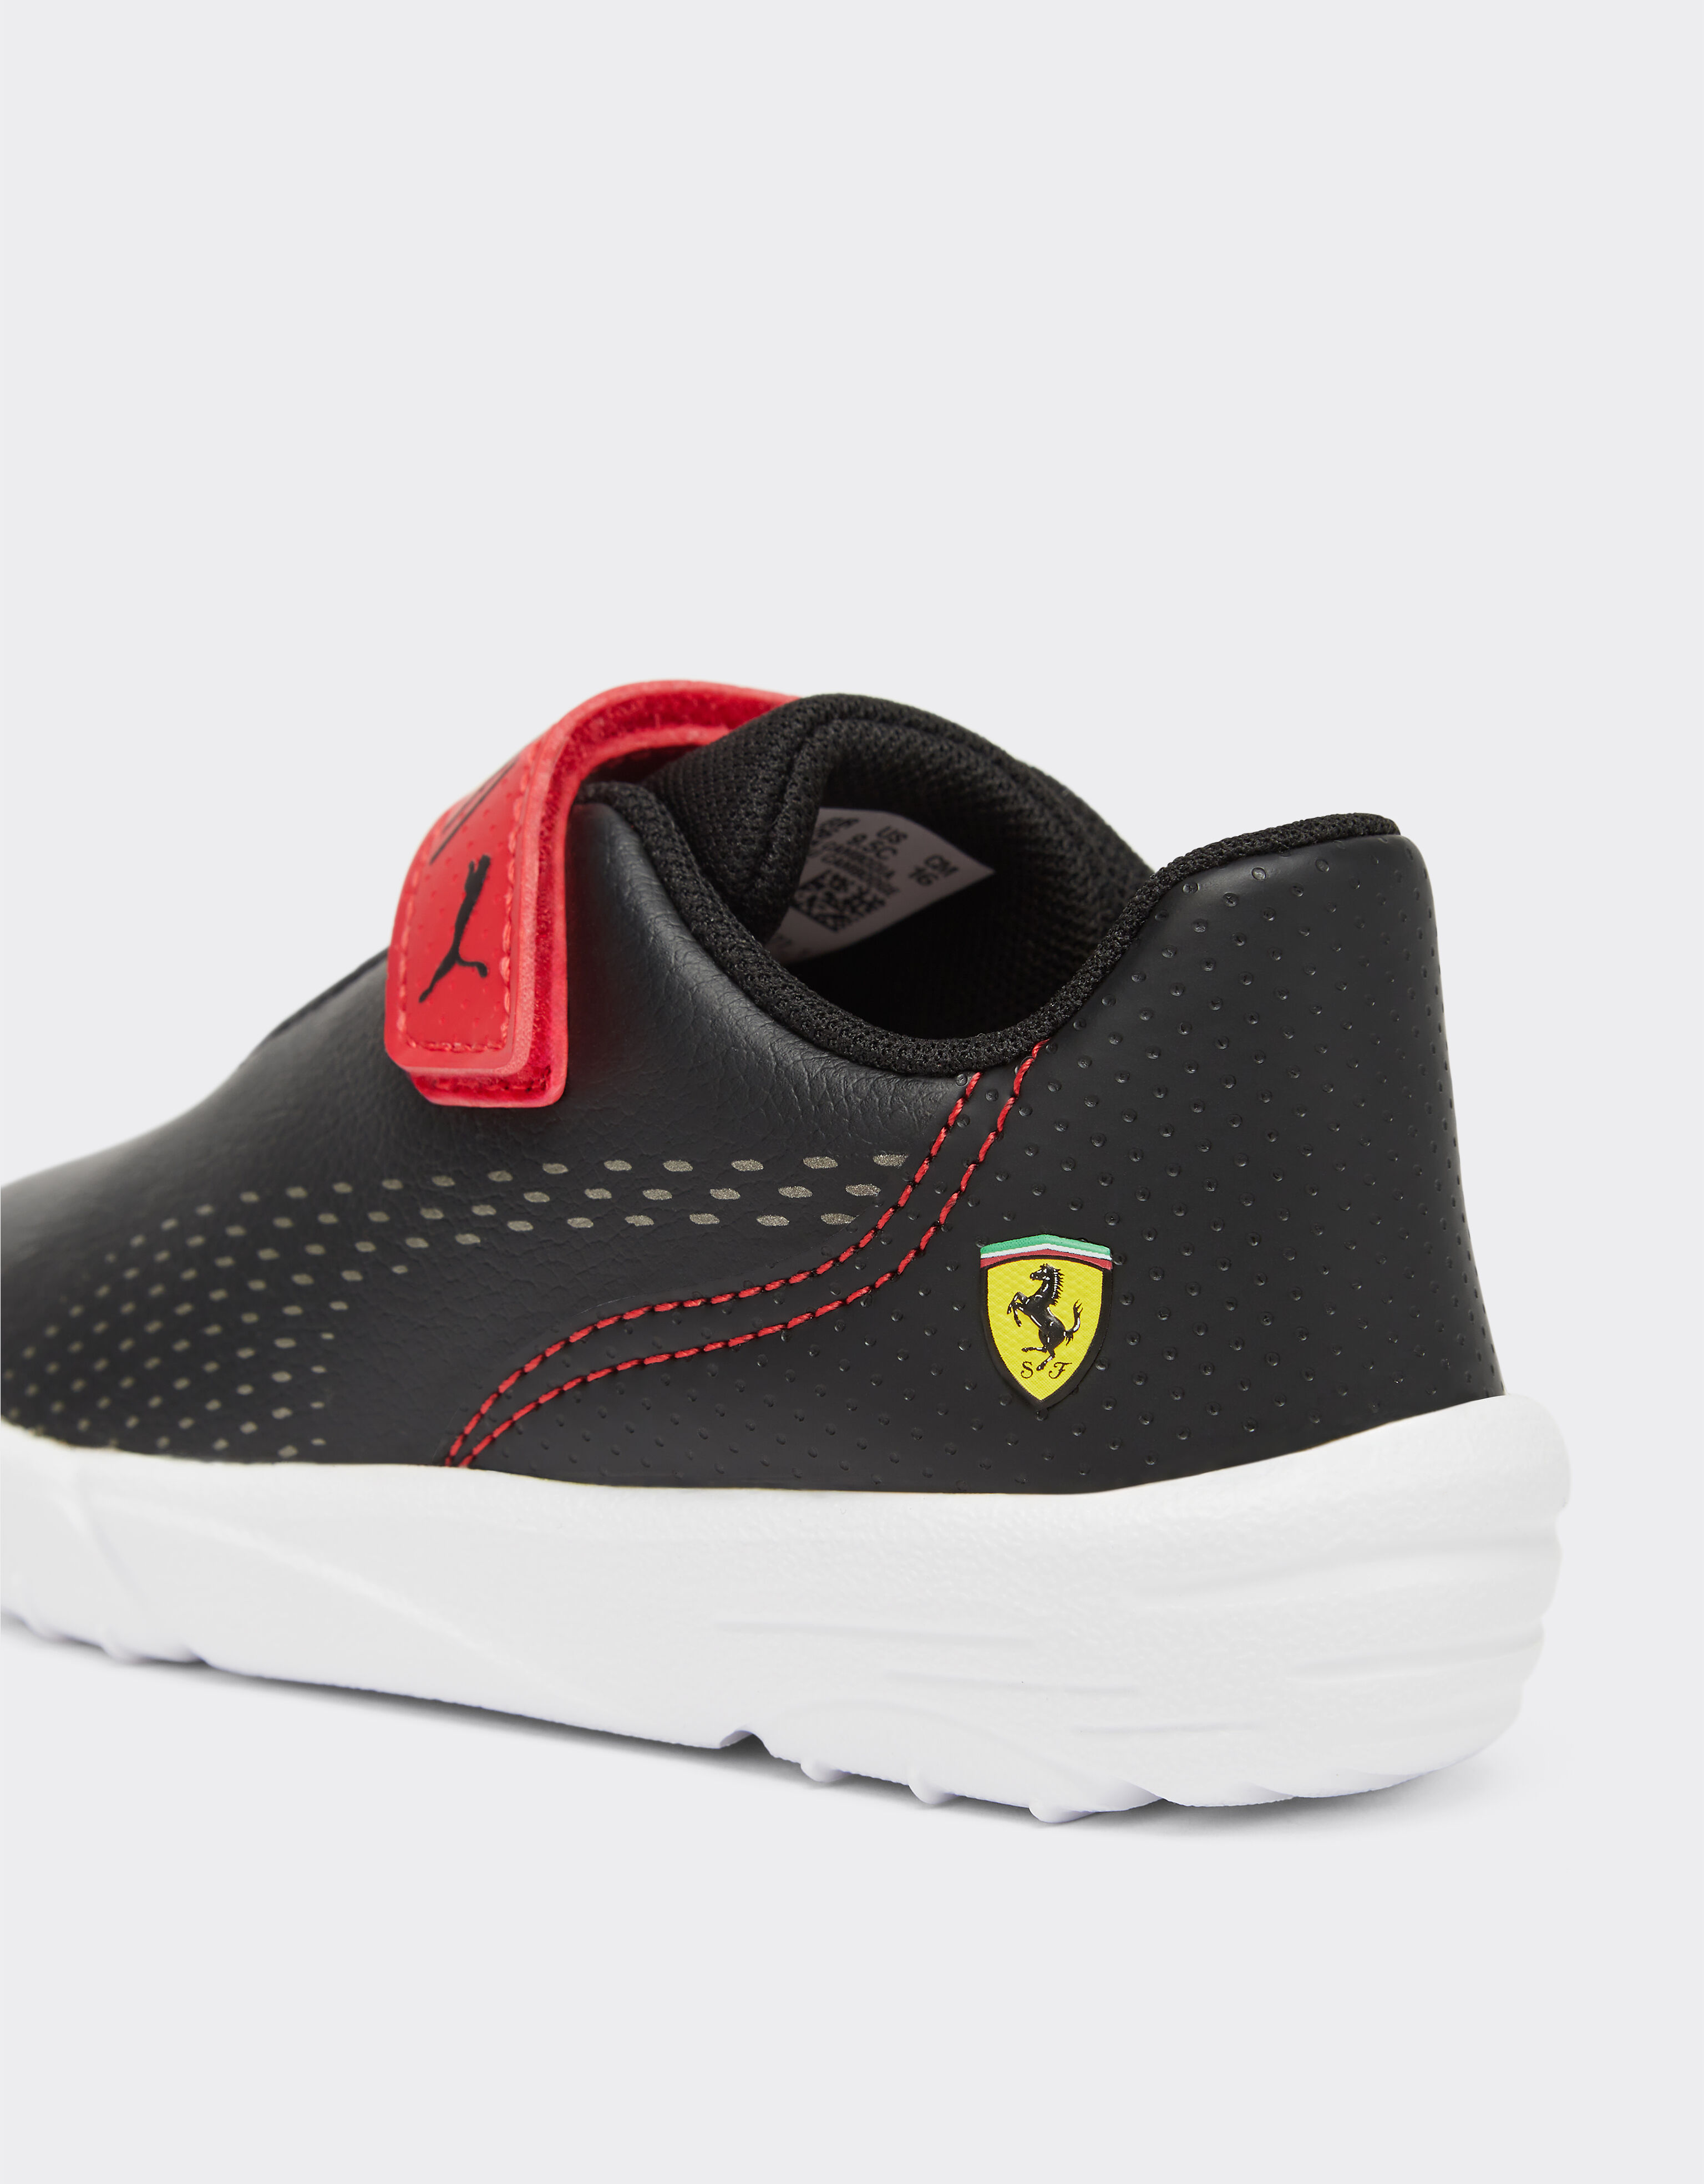 Ferrari Puma 呈现法拉利车队 Drift Cat Decima 学步鞋 黑色 F1119fB